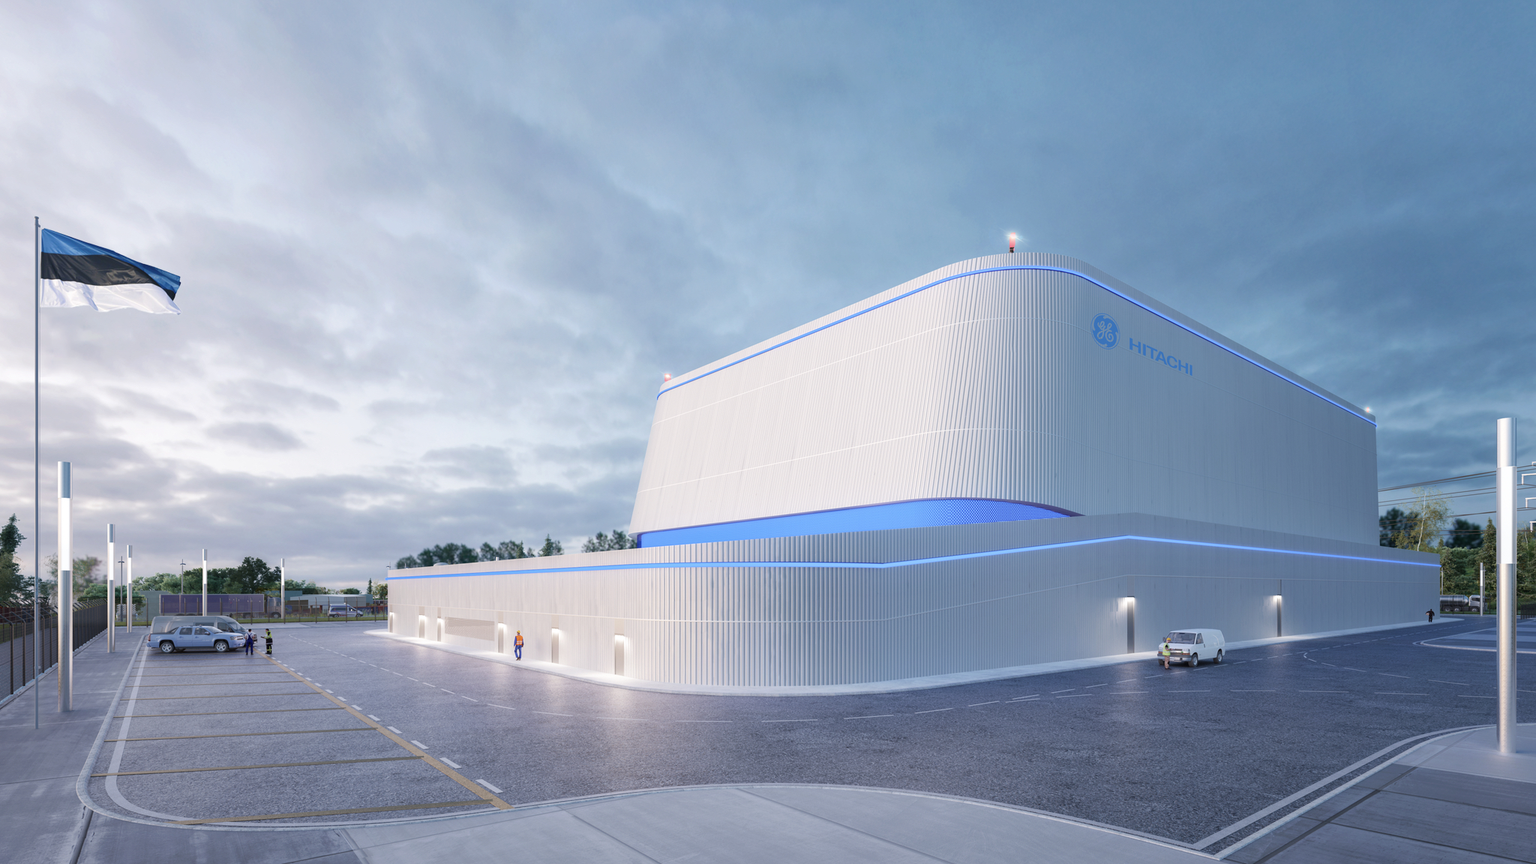 Визуализация планируемой для Эстонии АЭС нового поколения с малым модульным реактором GE Hitachi BWRX-300.